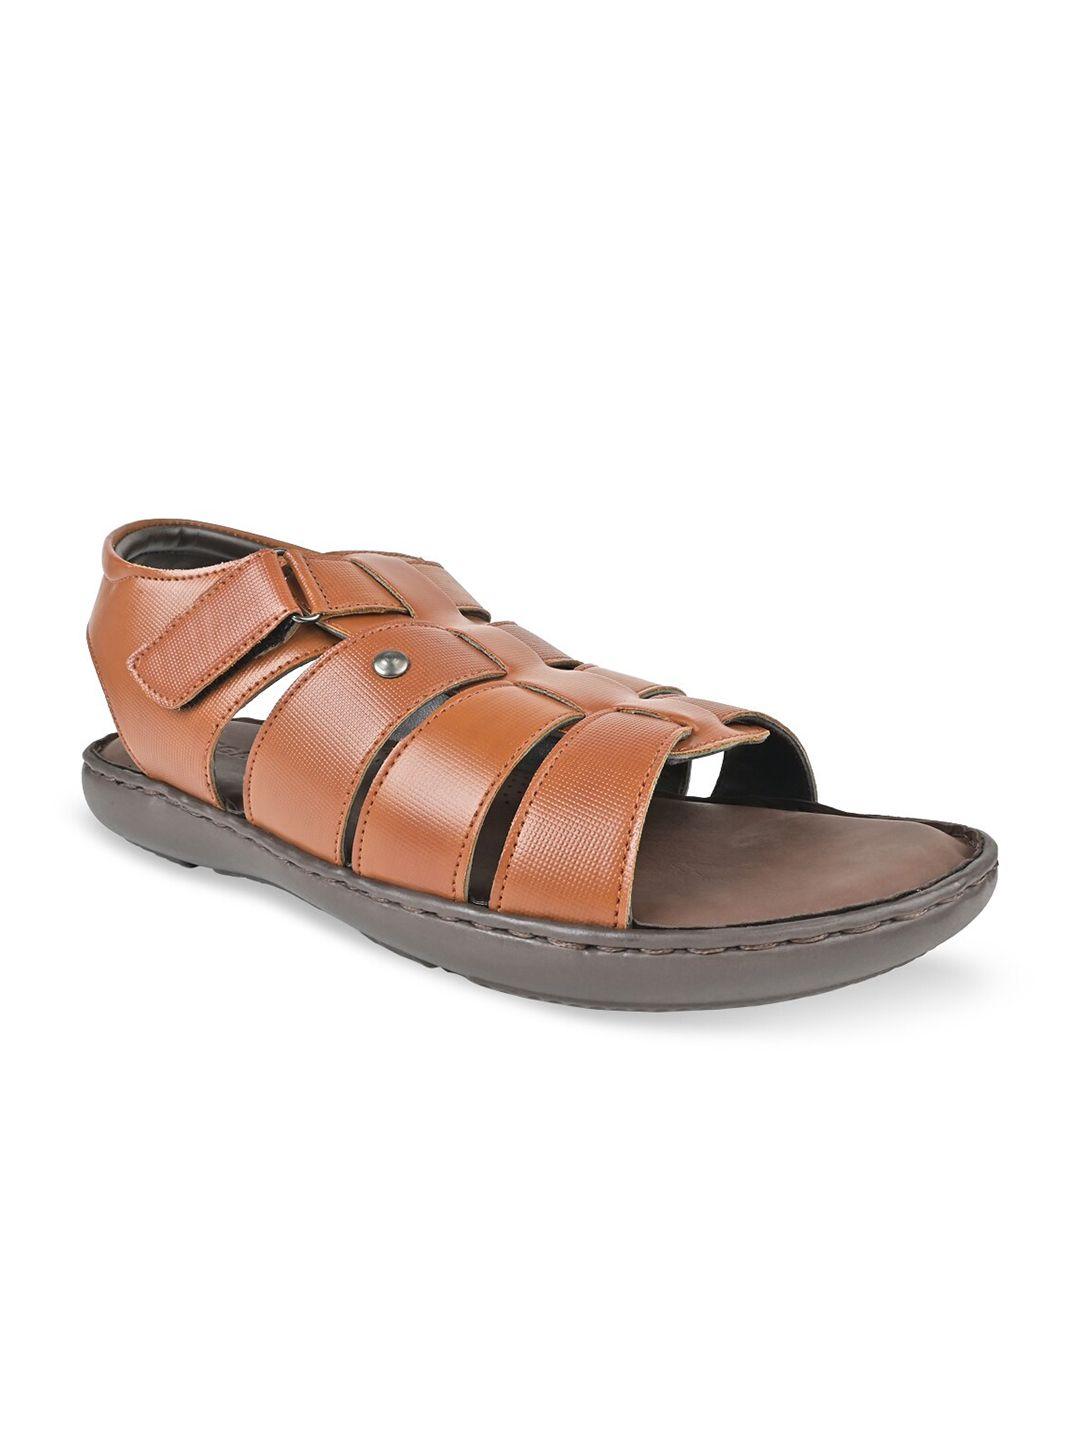 regal-men-textured-comfort-sandals